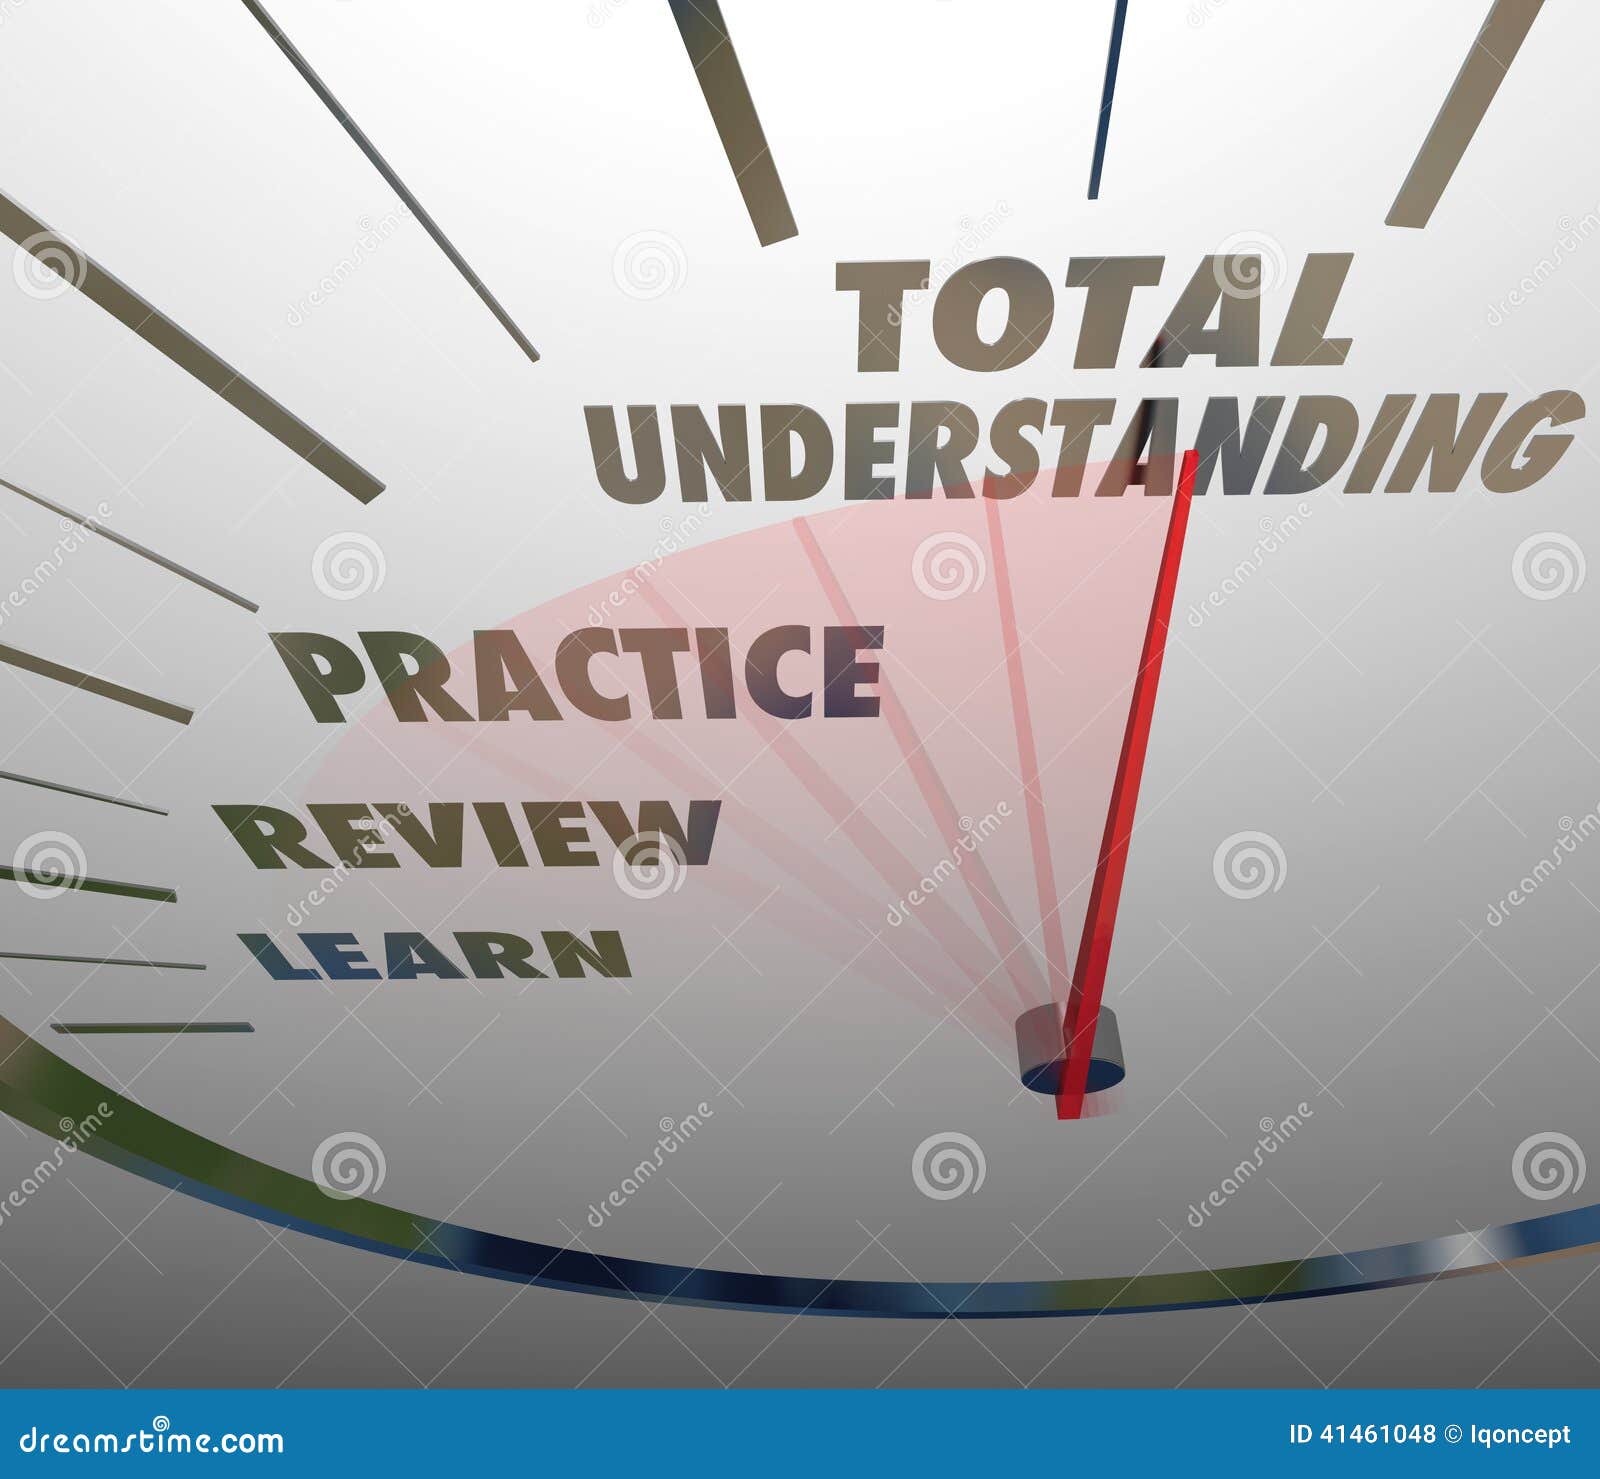 total understanding speedometer measure learning education